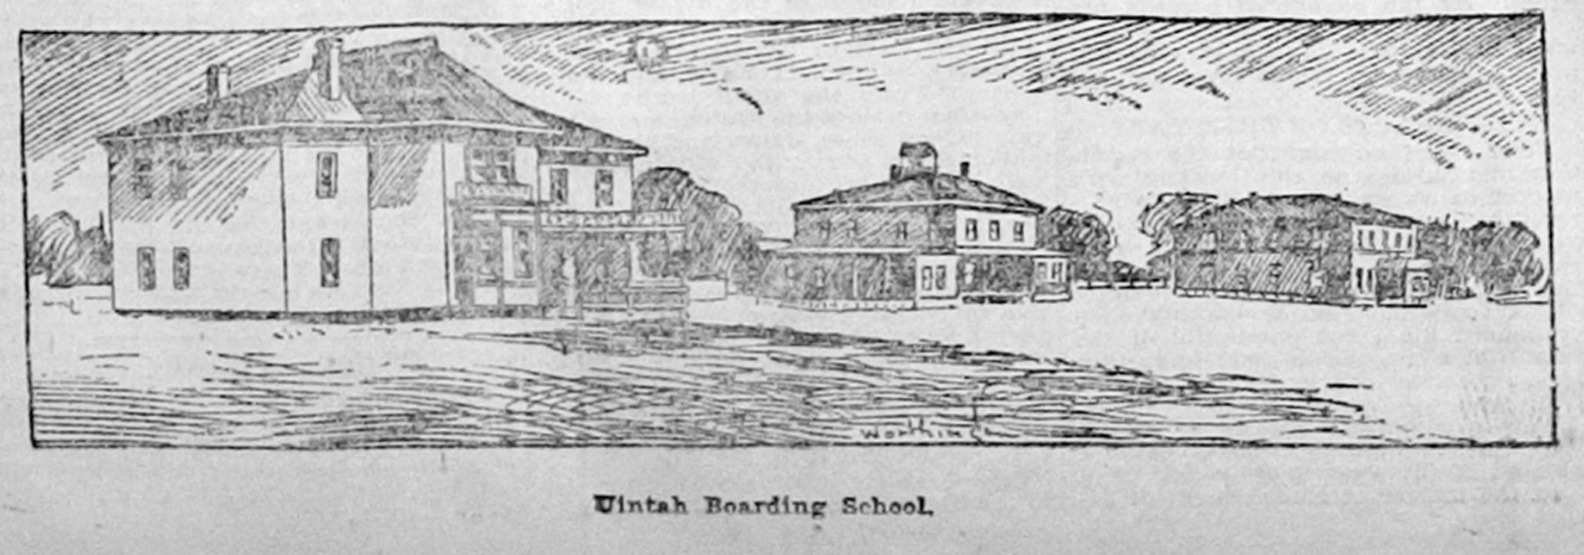 sketch of exterior boarding school buildings